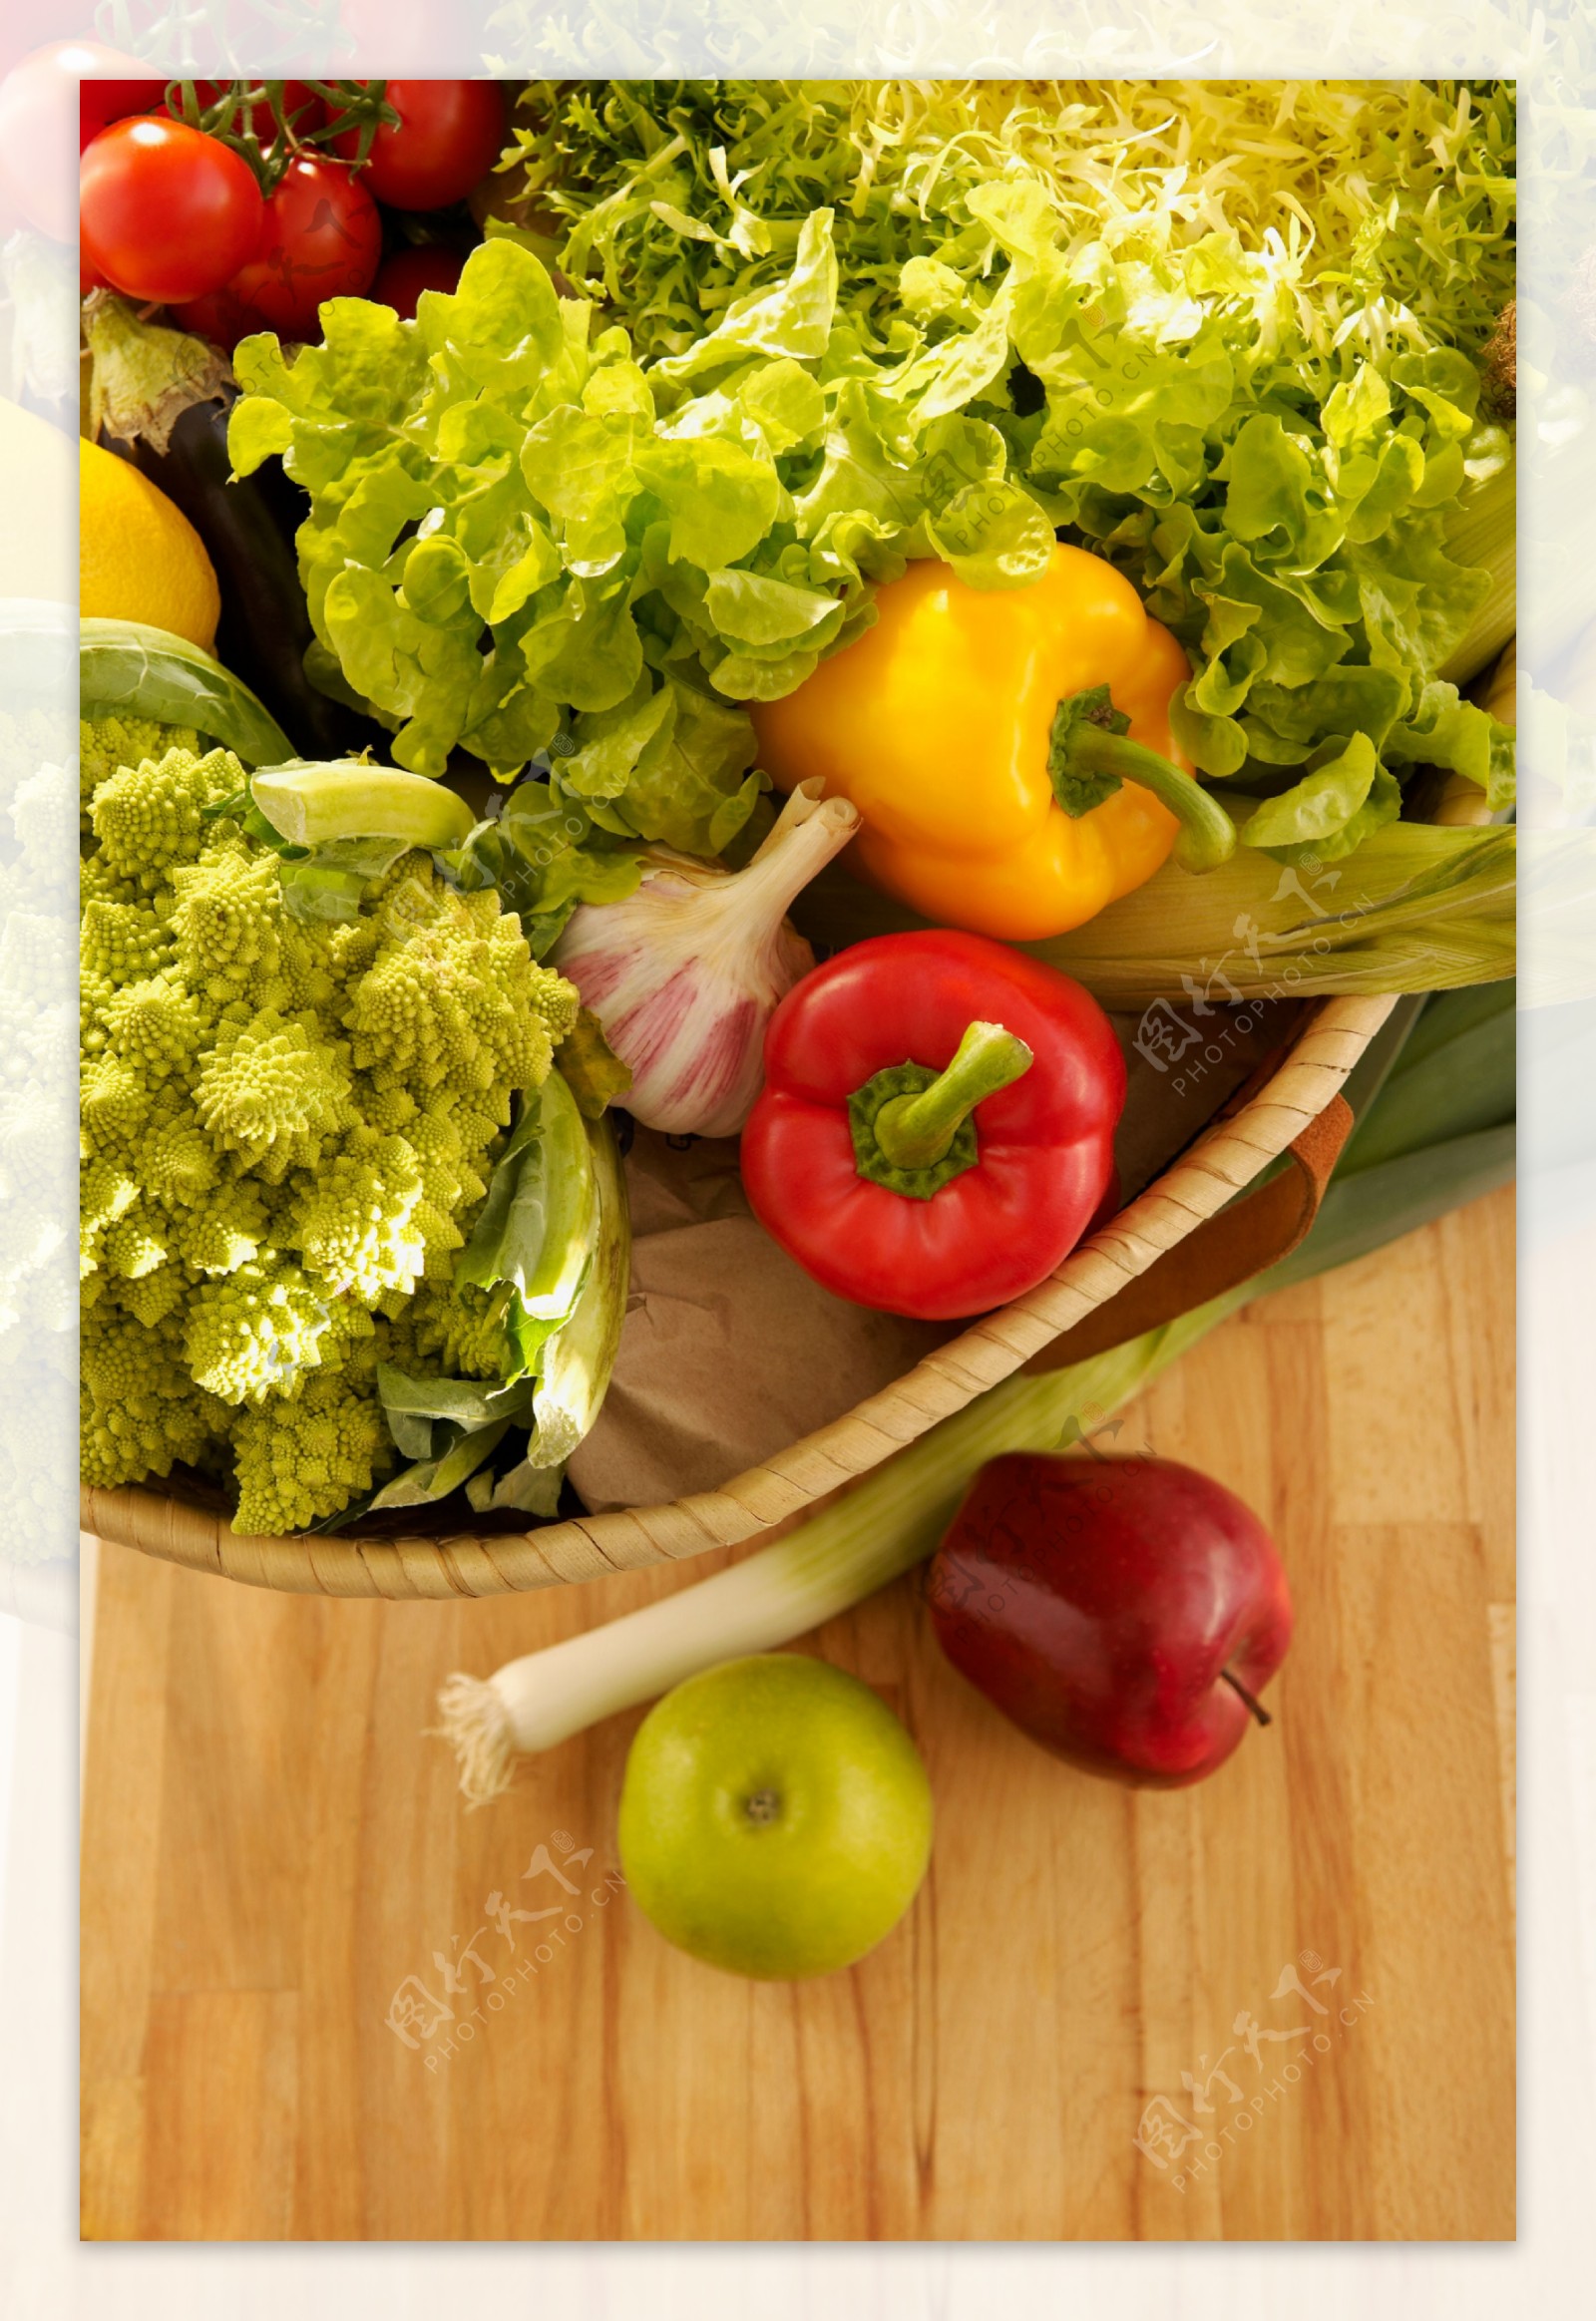 蔬菜与水果图片